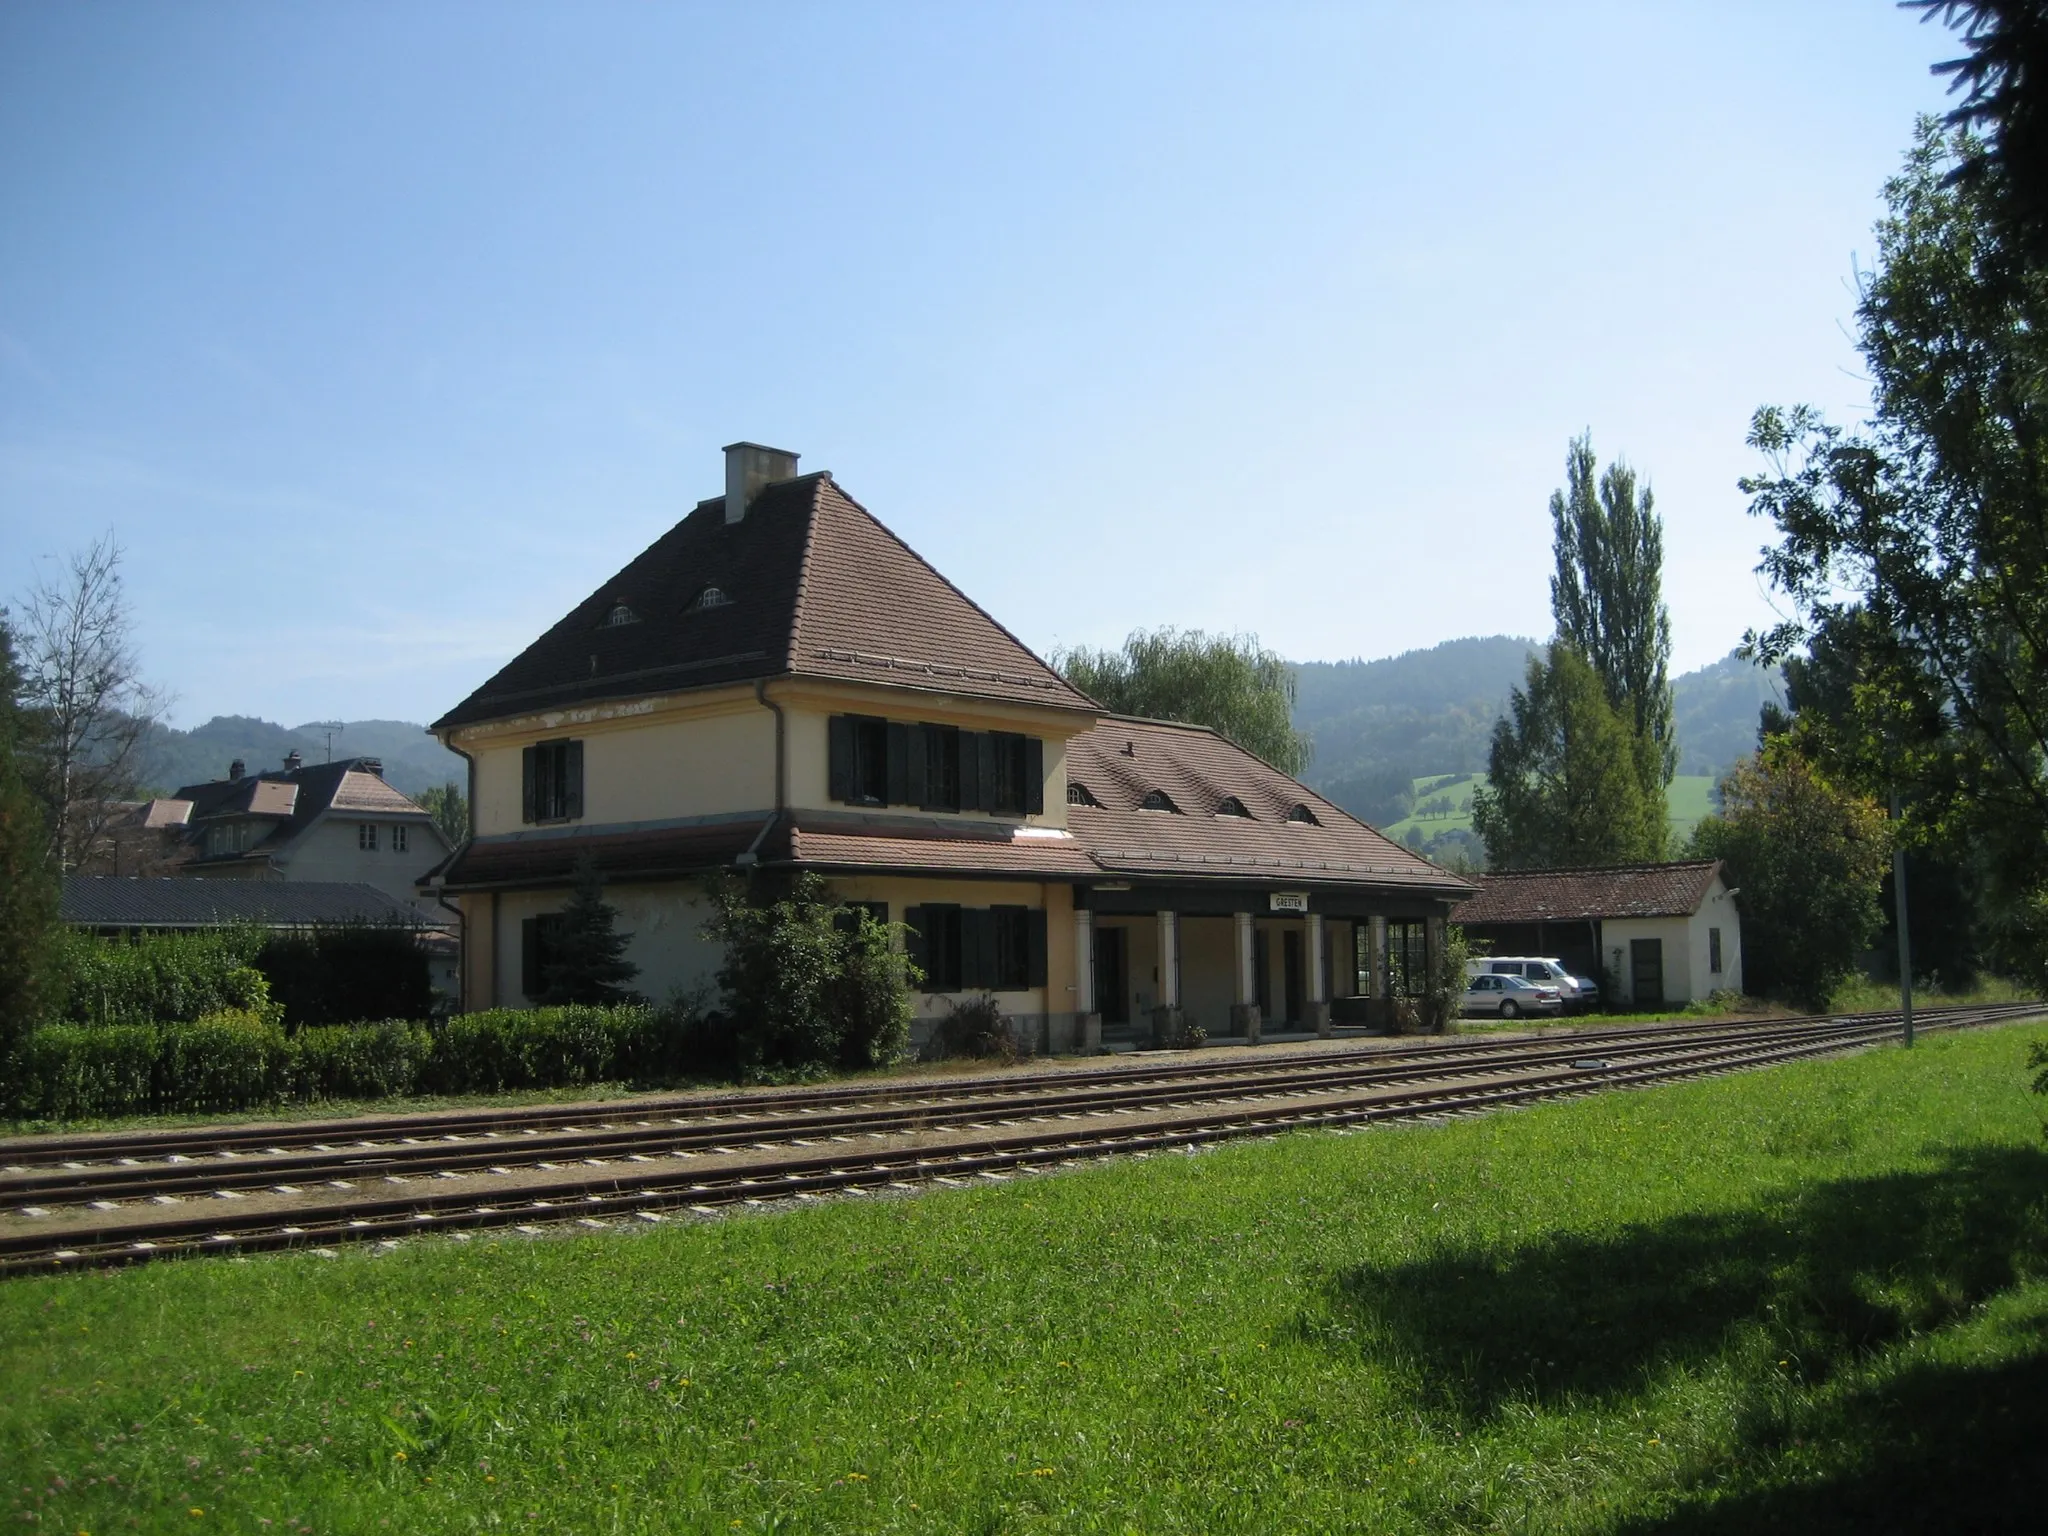 Photo showing: Train station Gresten in Lower Austria